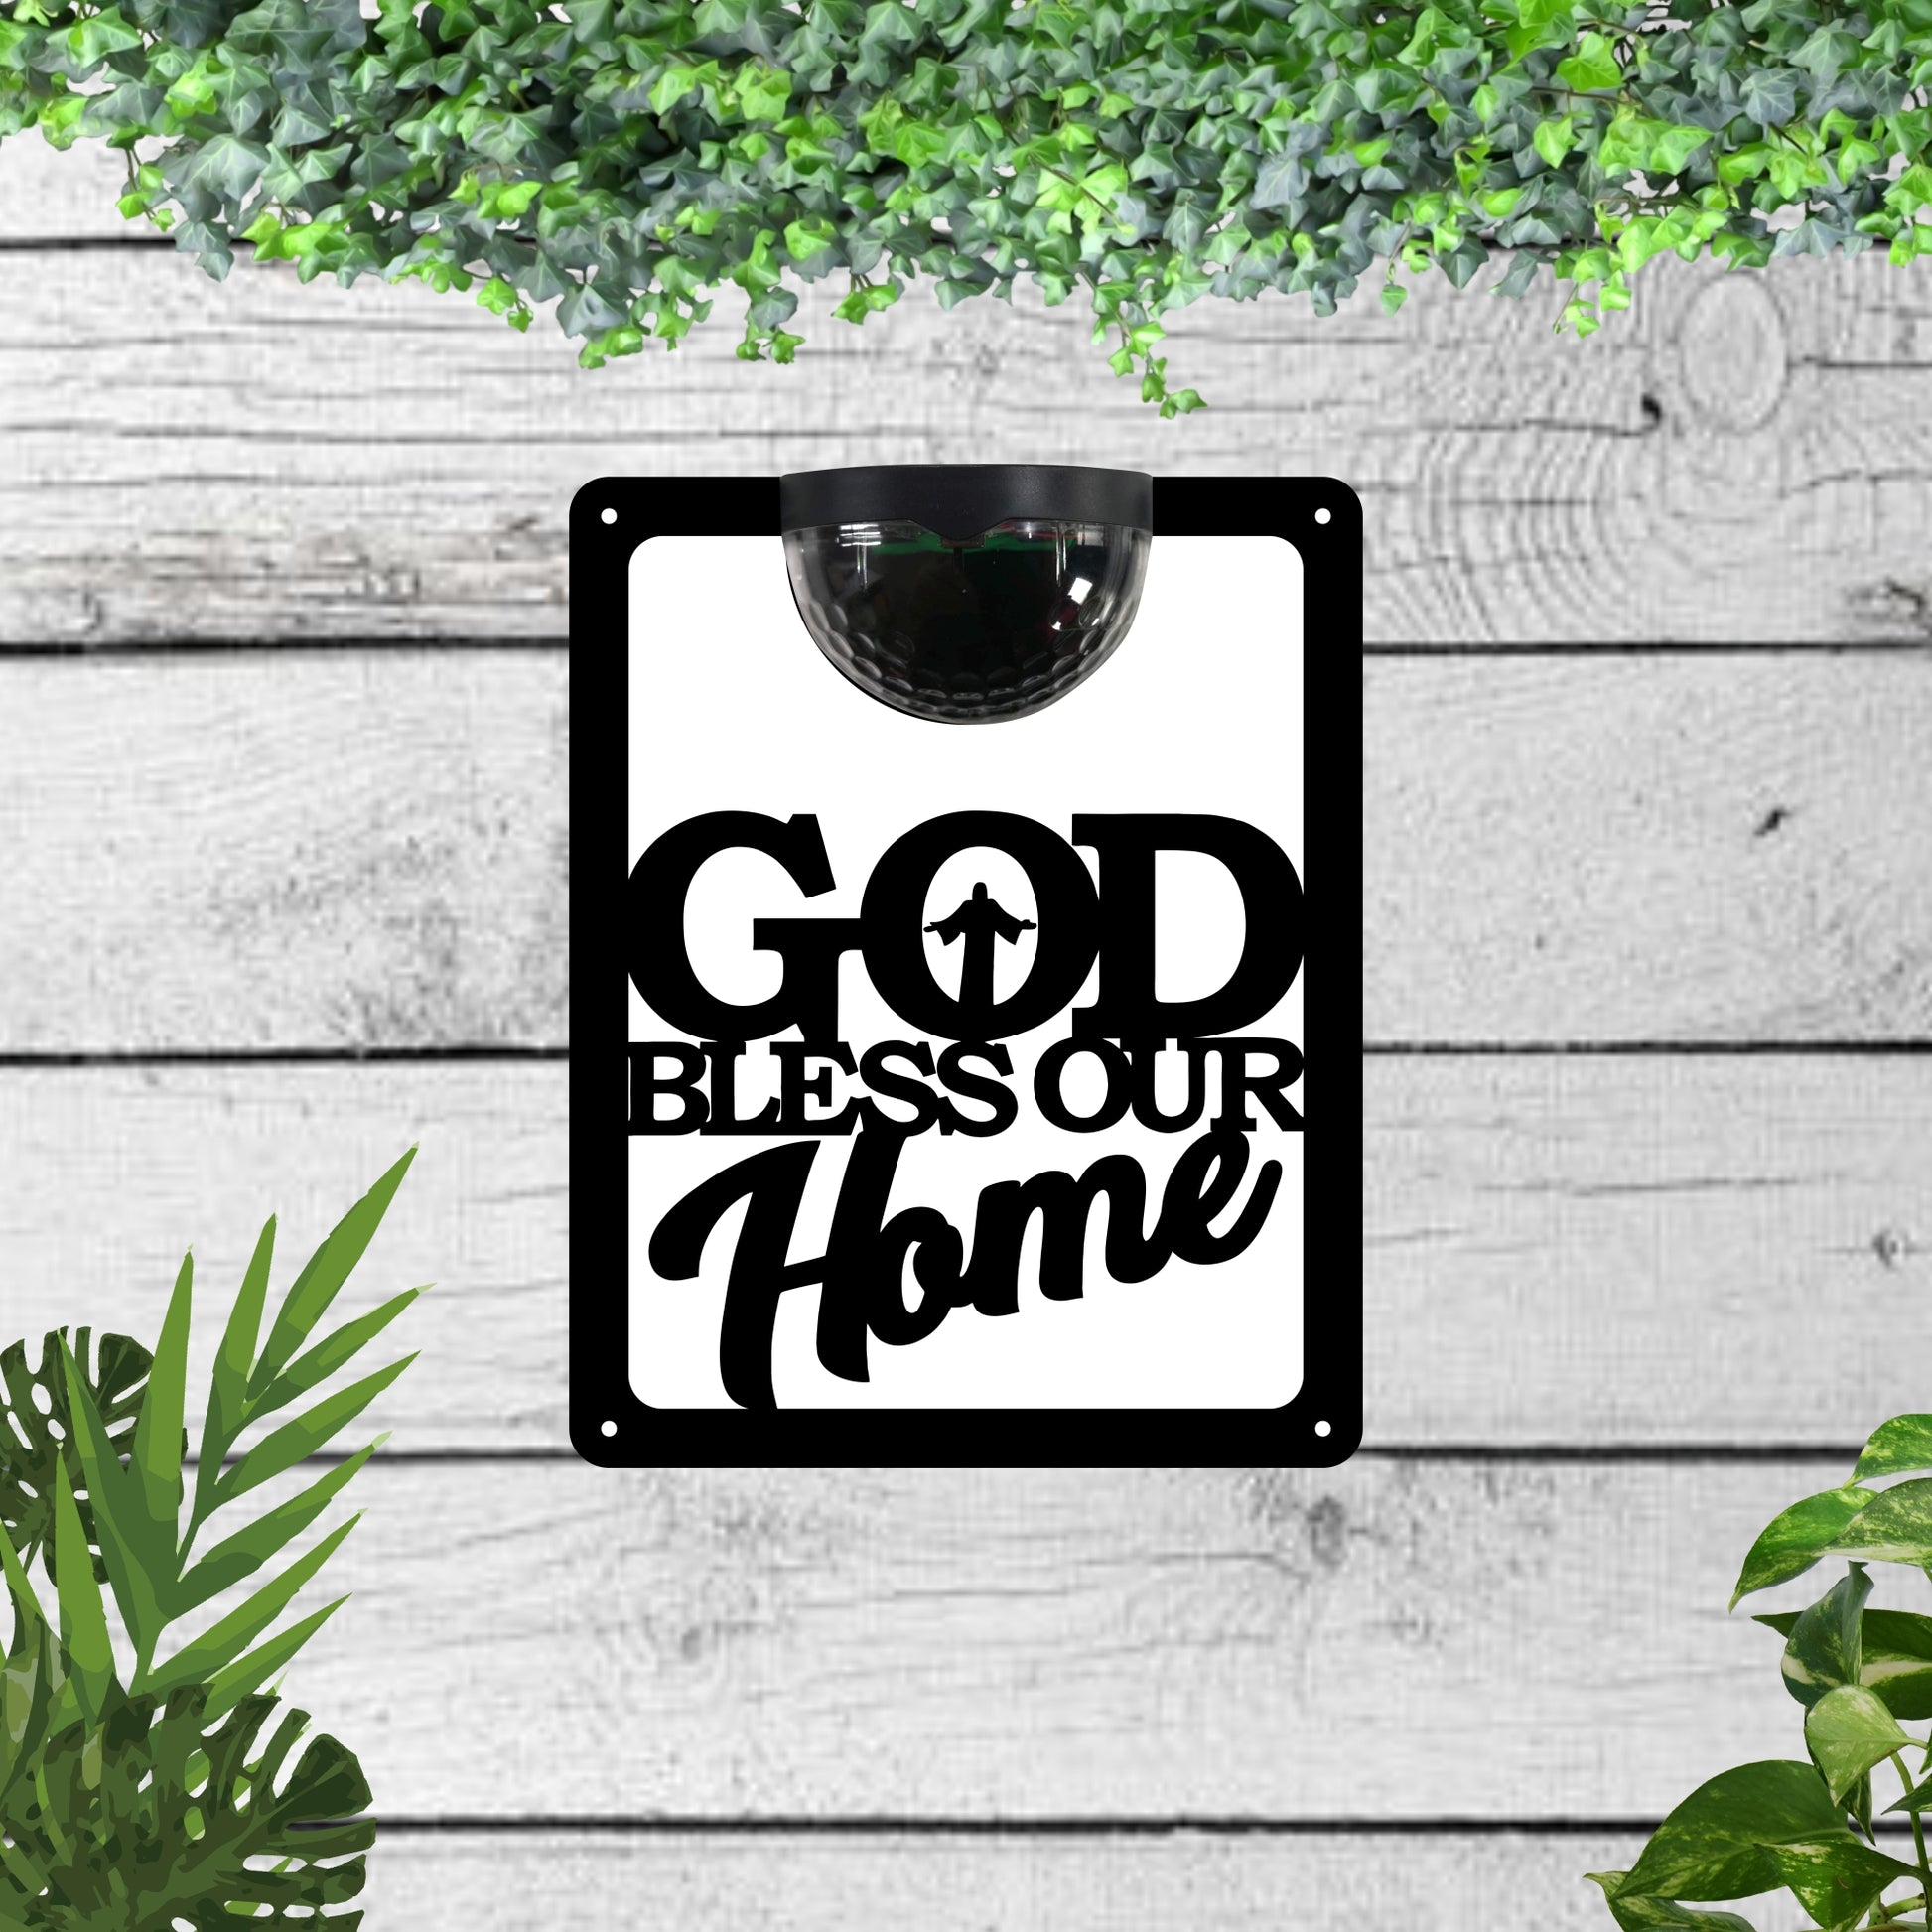 Garden Solar Light Wall Plaque Featuring God Bless Our Home | John Alans